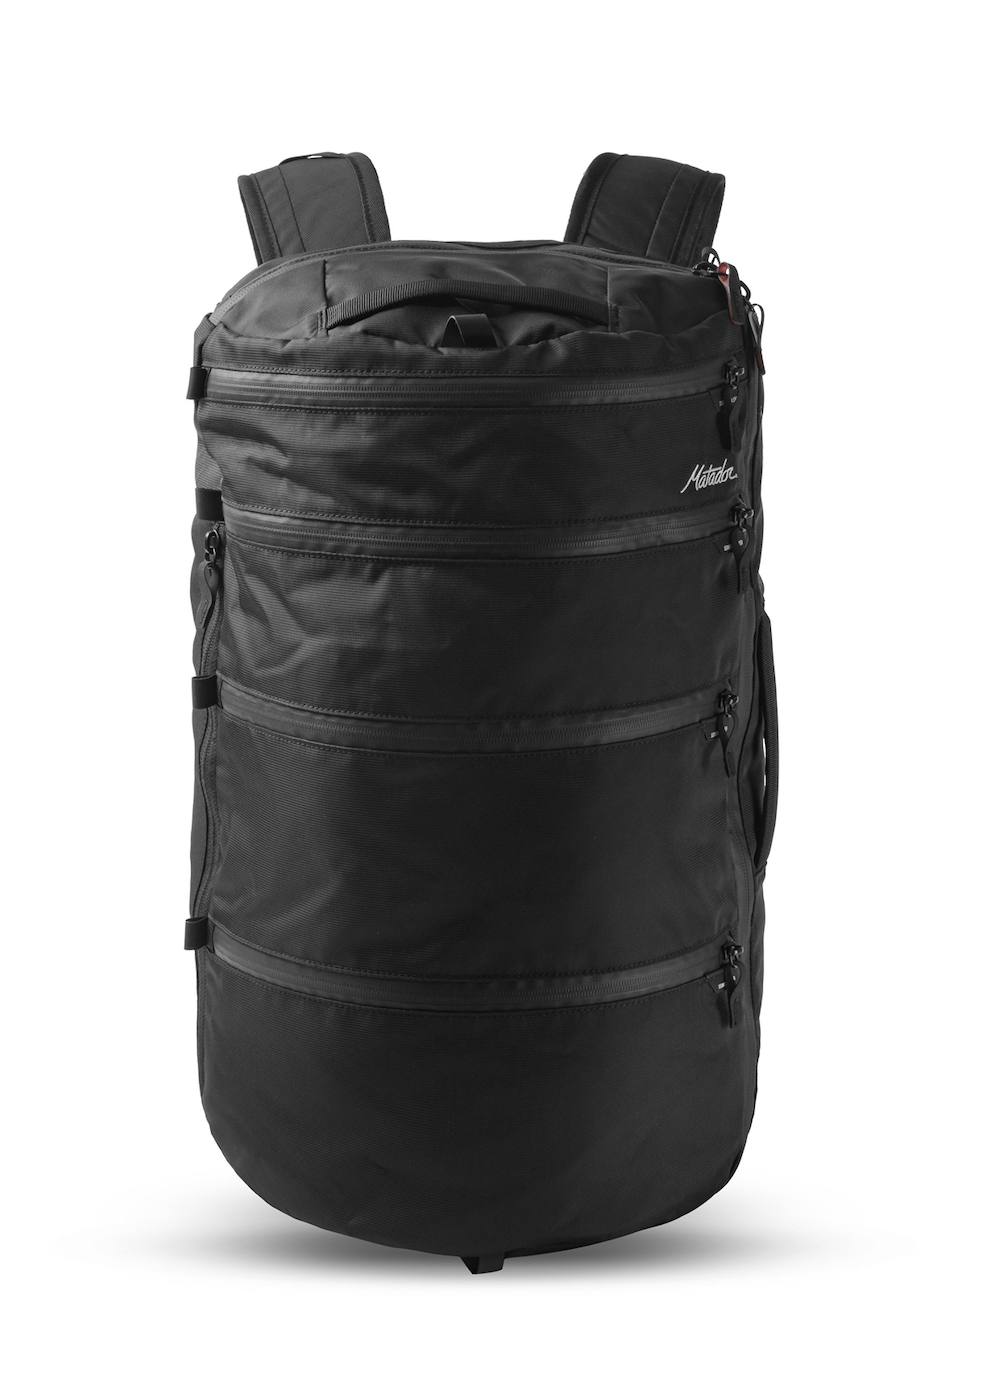 SEG28 Segmented Backpack